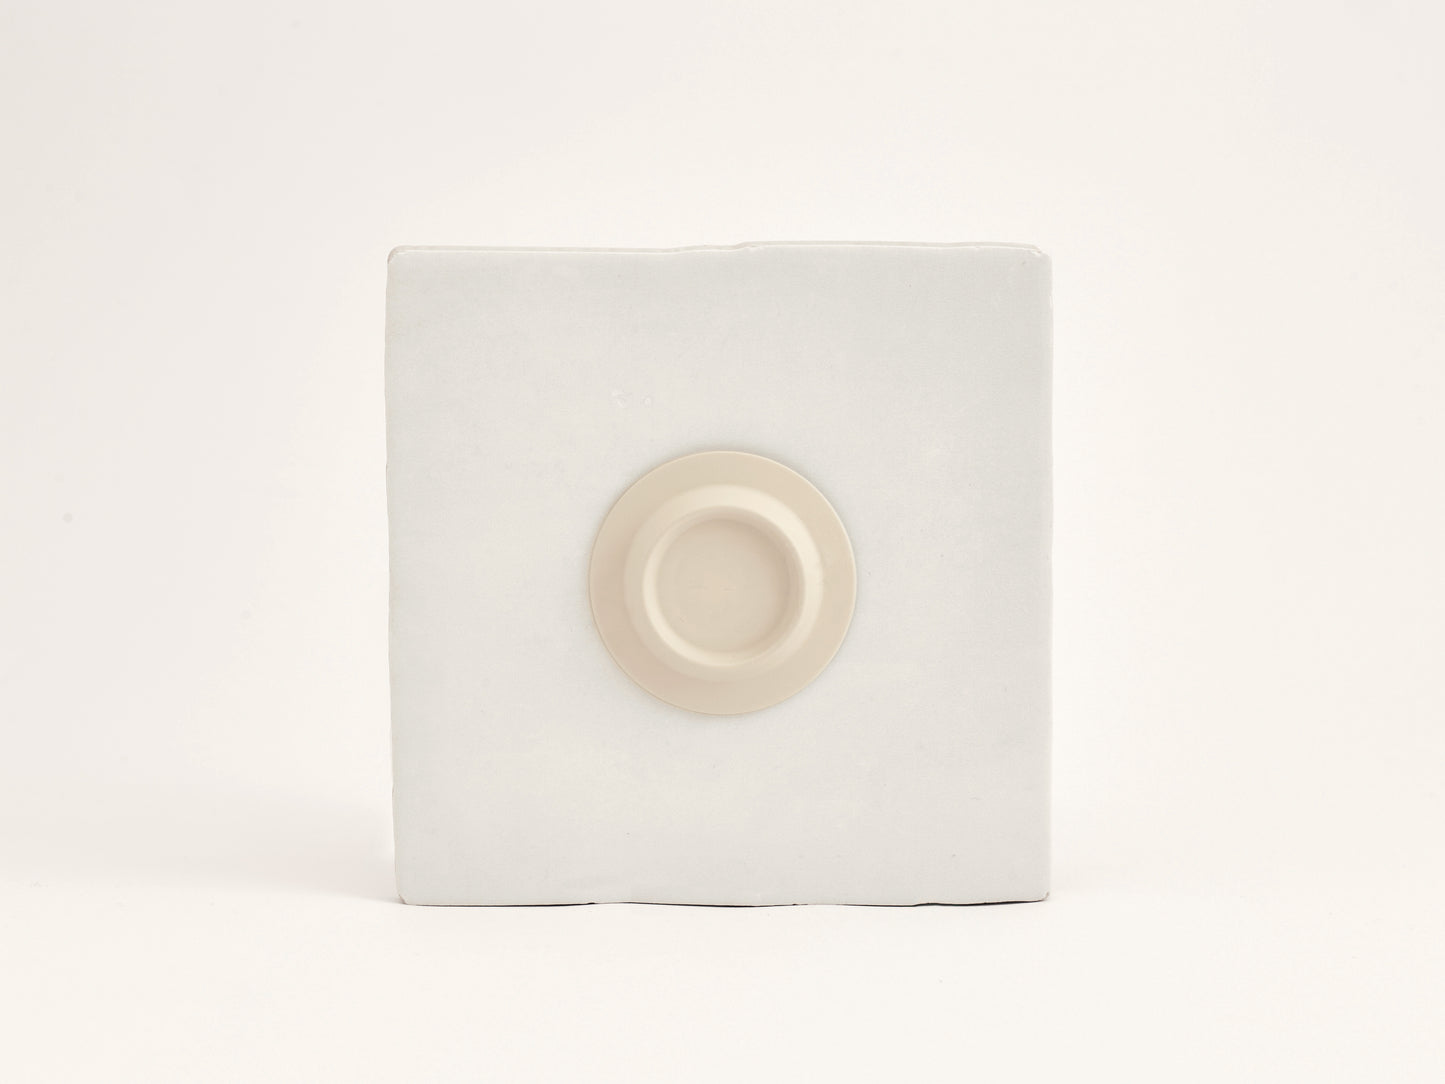 Soapi Off-white - magnetic soap holder